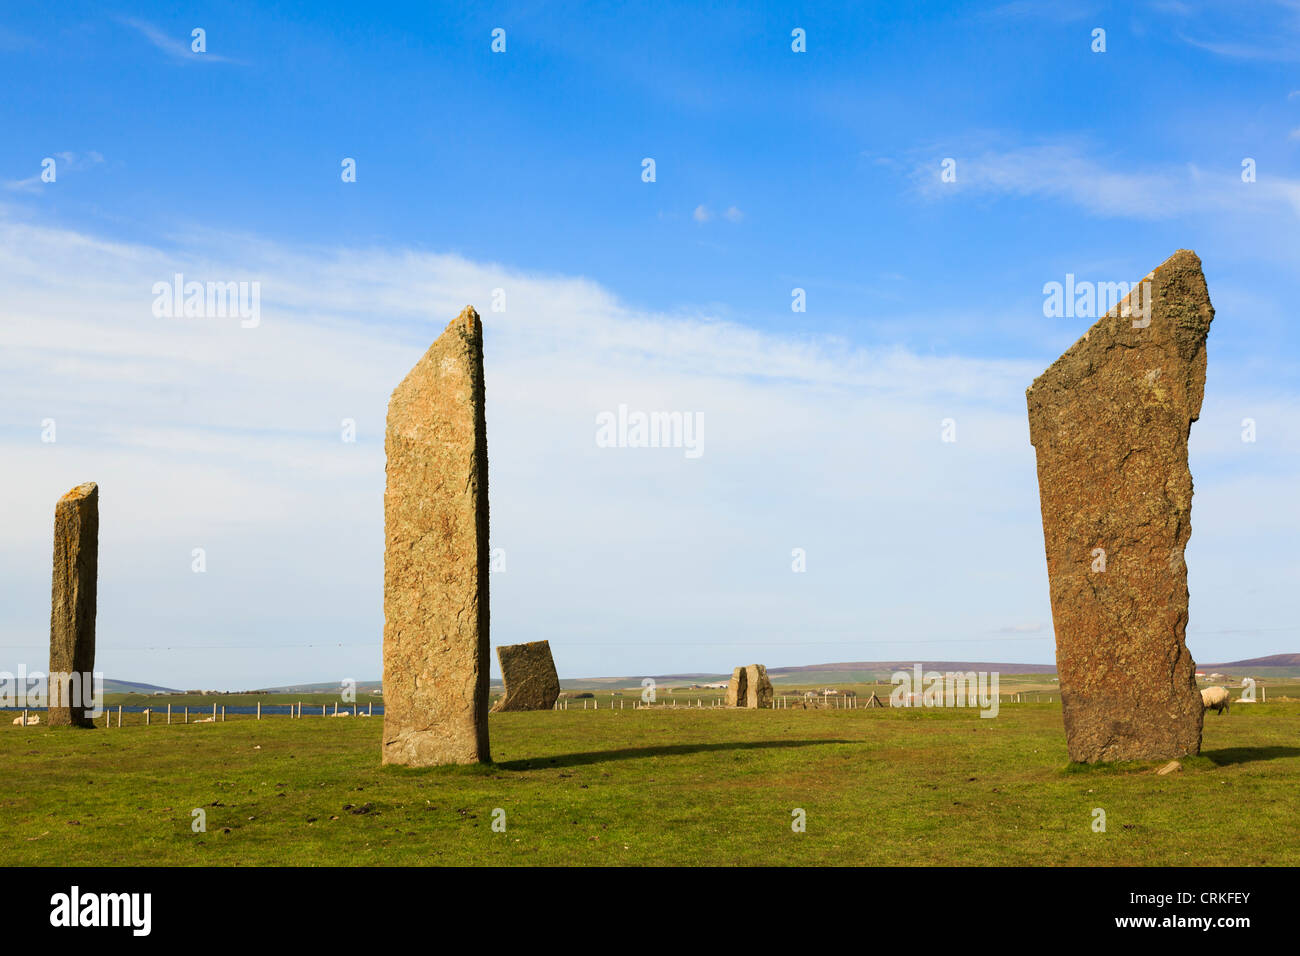 De grandes pierres de Stenness reste d'un cercle de pierres néolithiques à Stenness Orkney Islands Ecosse Royaume-Uni Grande-Bretagne Banque D'Images